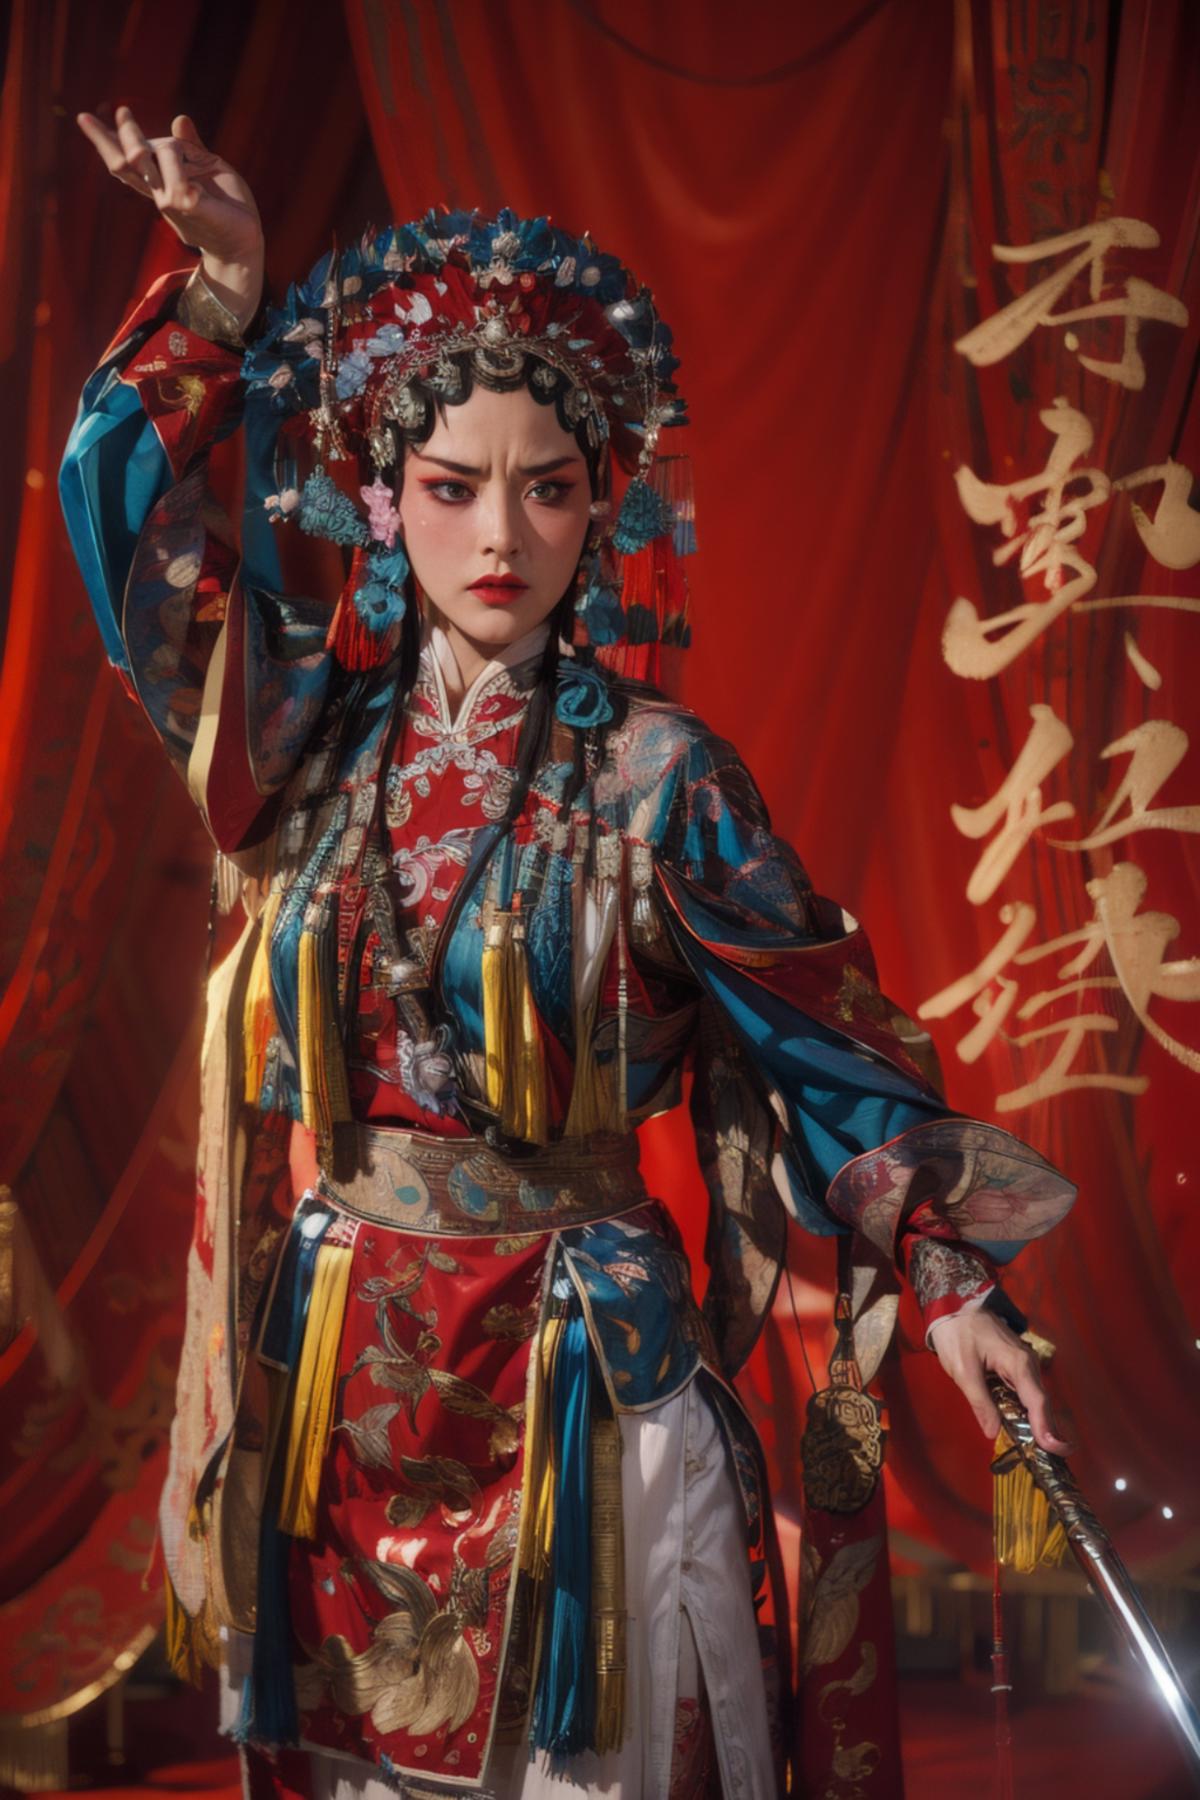 ChineseOpera Beta image by Bei3